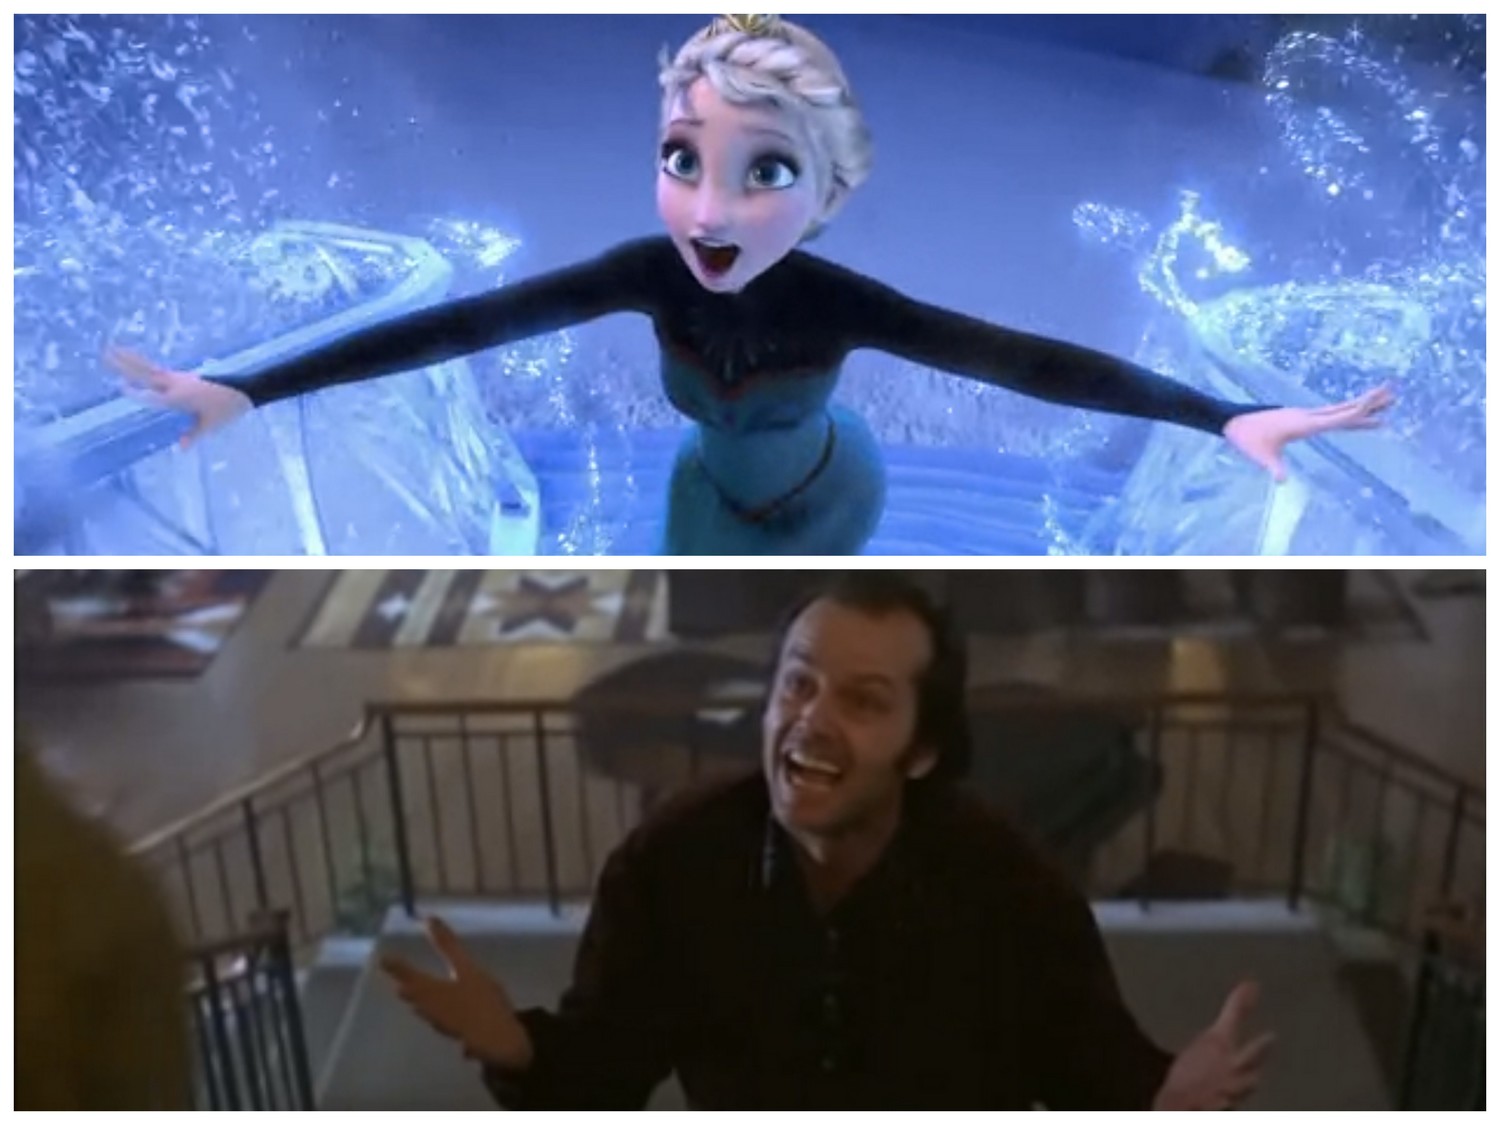 Disney's Frozen and The Shining Conspiracy - fun